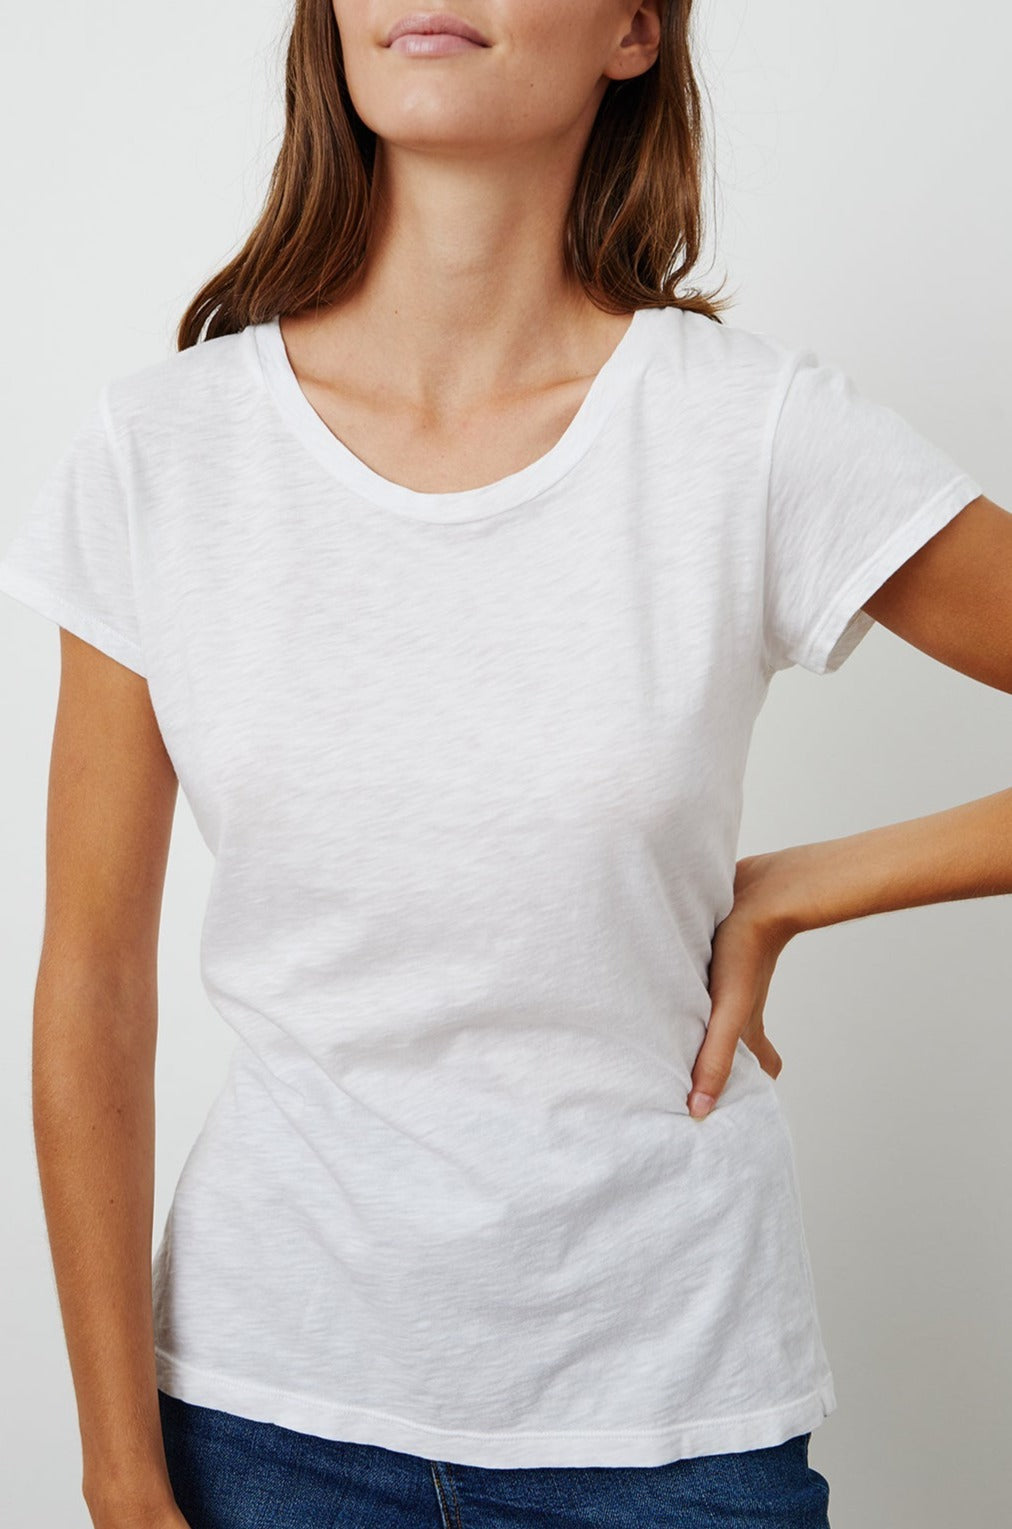 Odelia Cotton Slub Tee - L / White - Shirts & Tops